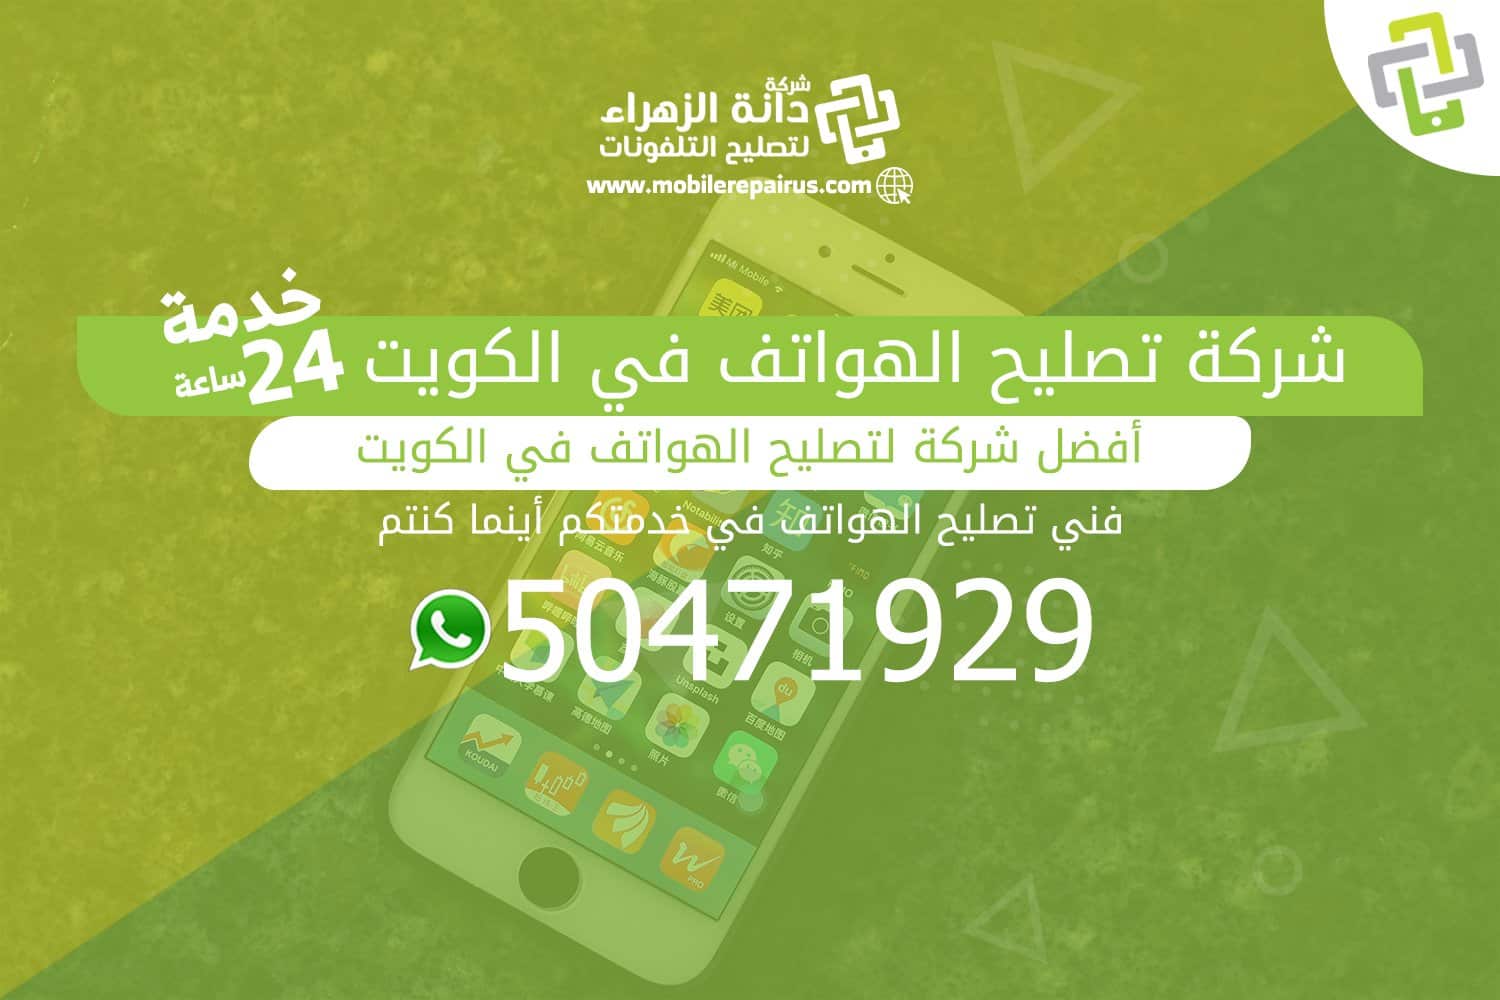 شركة تصليح الهواتف في الكويت